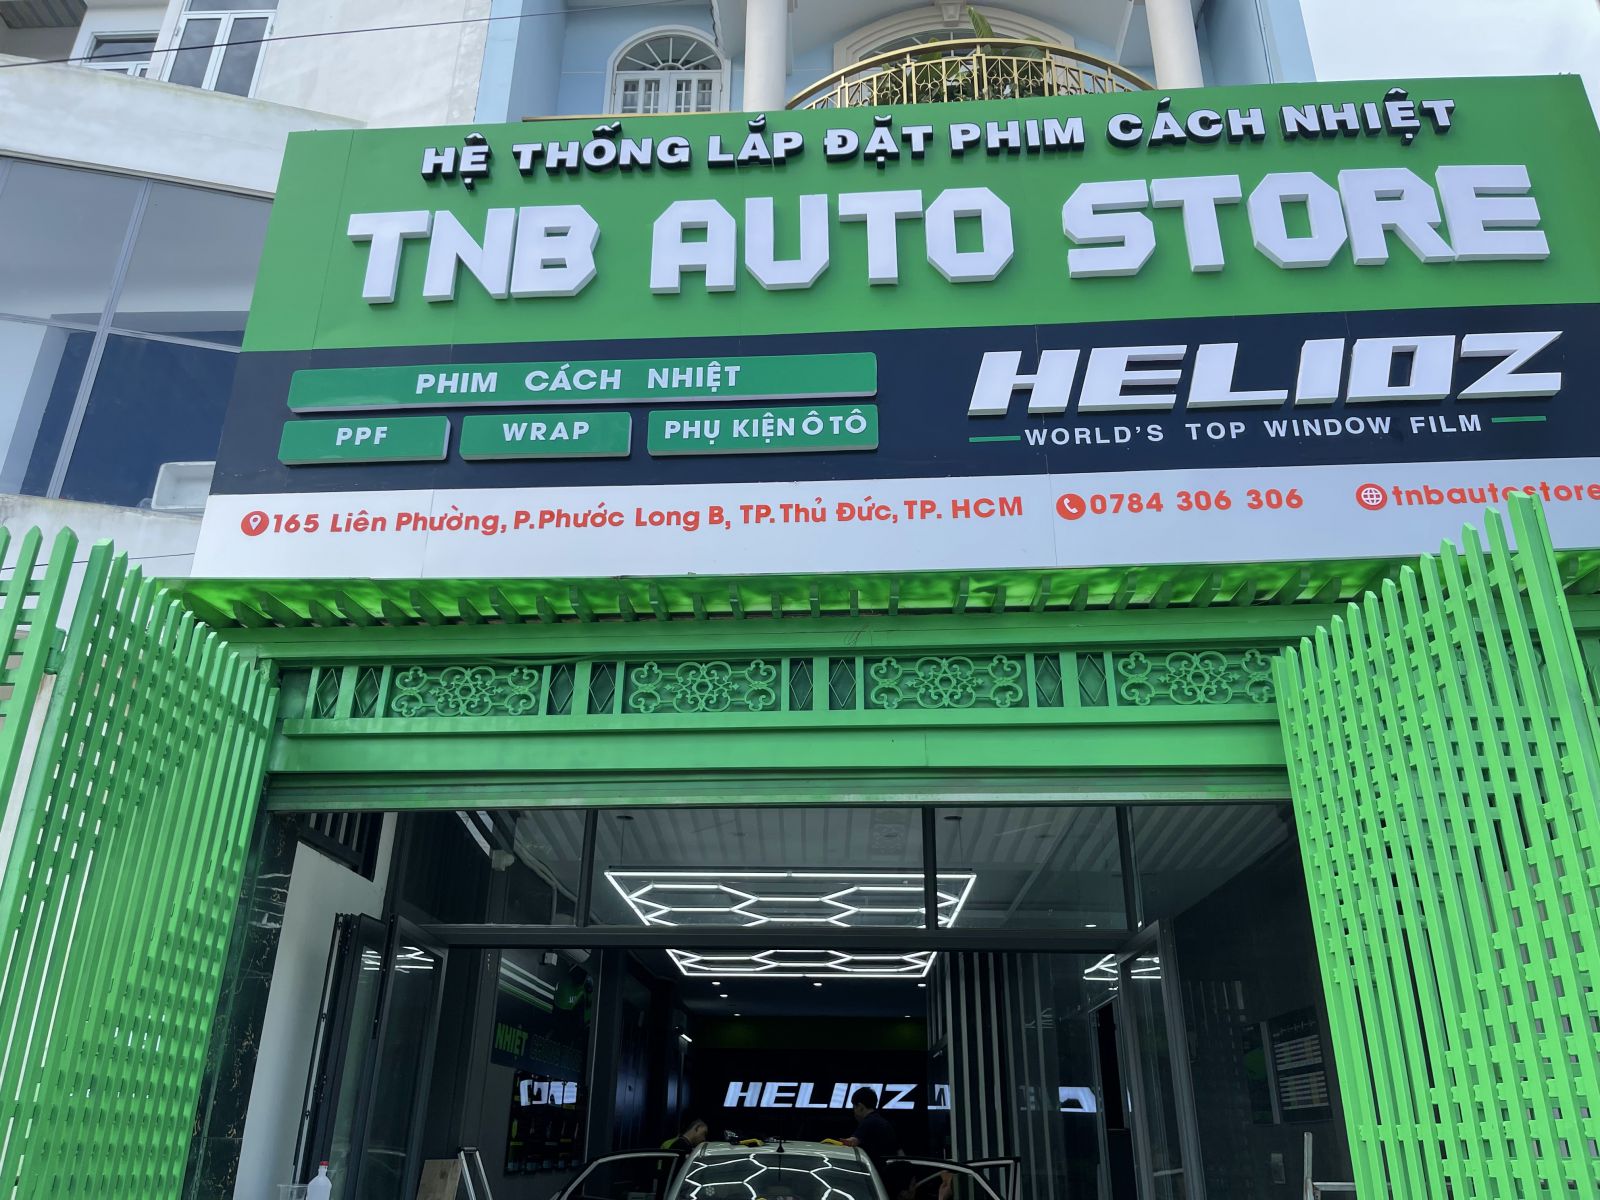 TNB Auto Store - Hệ thống lắp đặt phim cách nhiệt Ô tô chuyên nghiệp